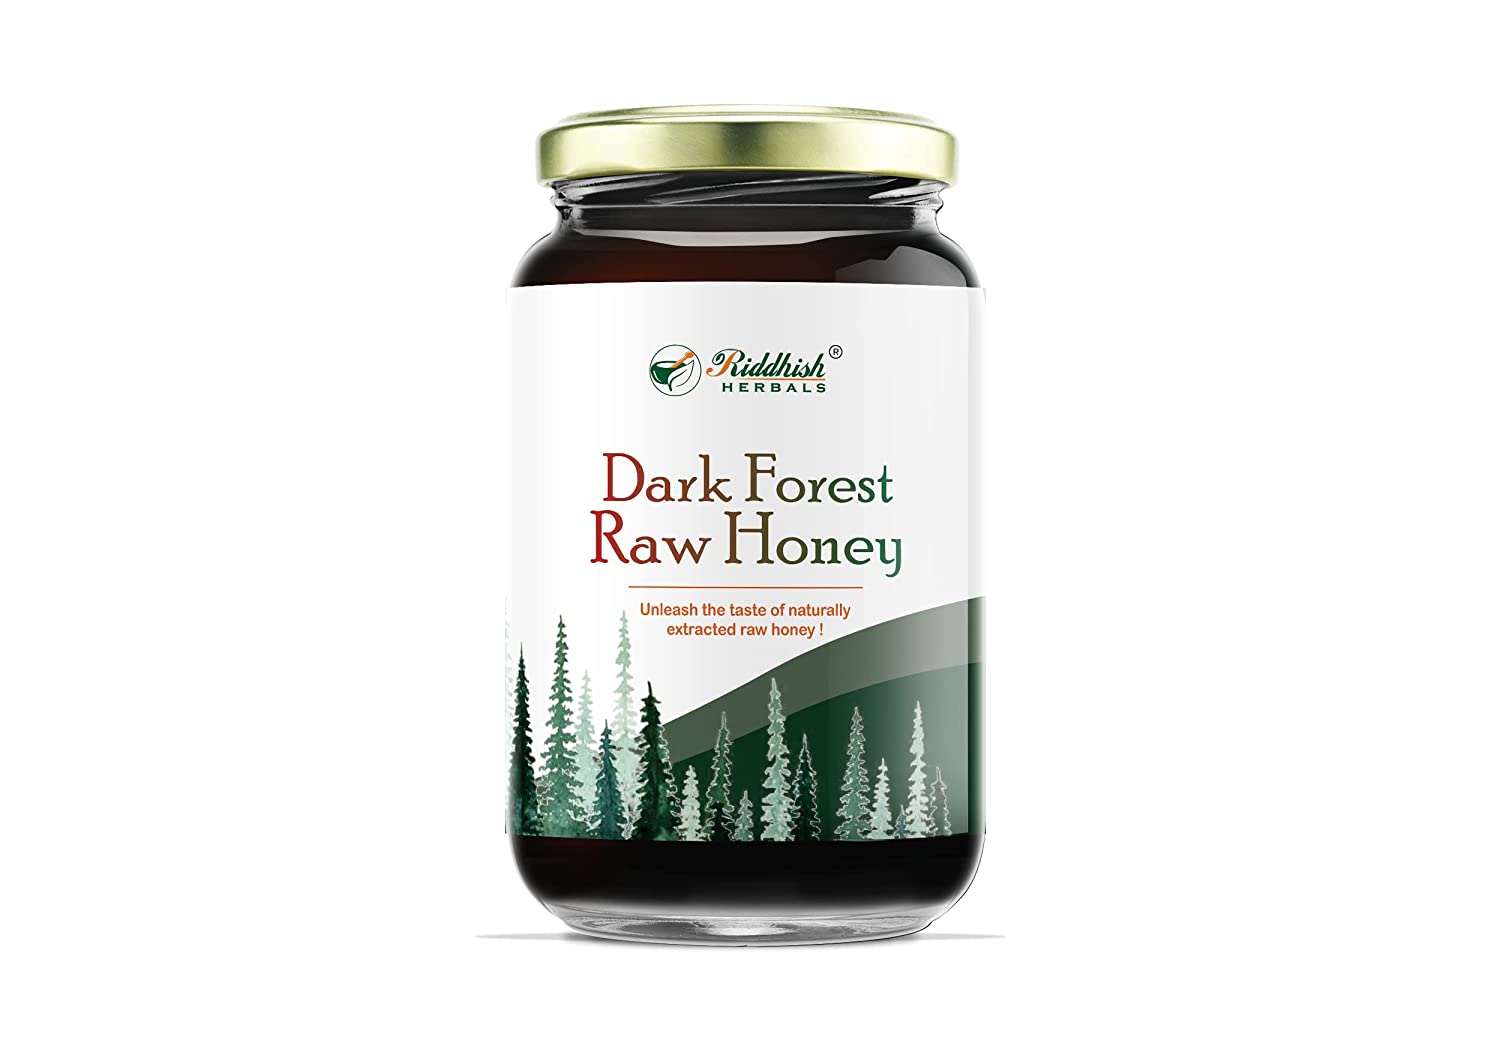 Dark Forest Raw Honey